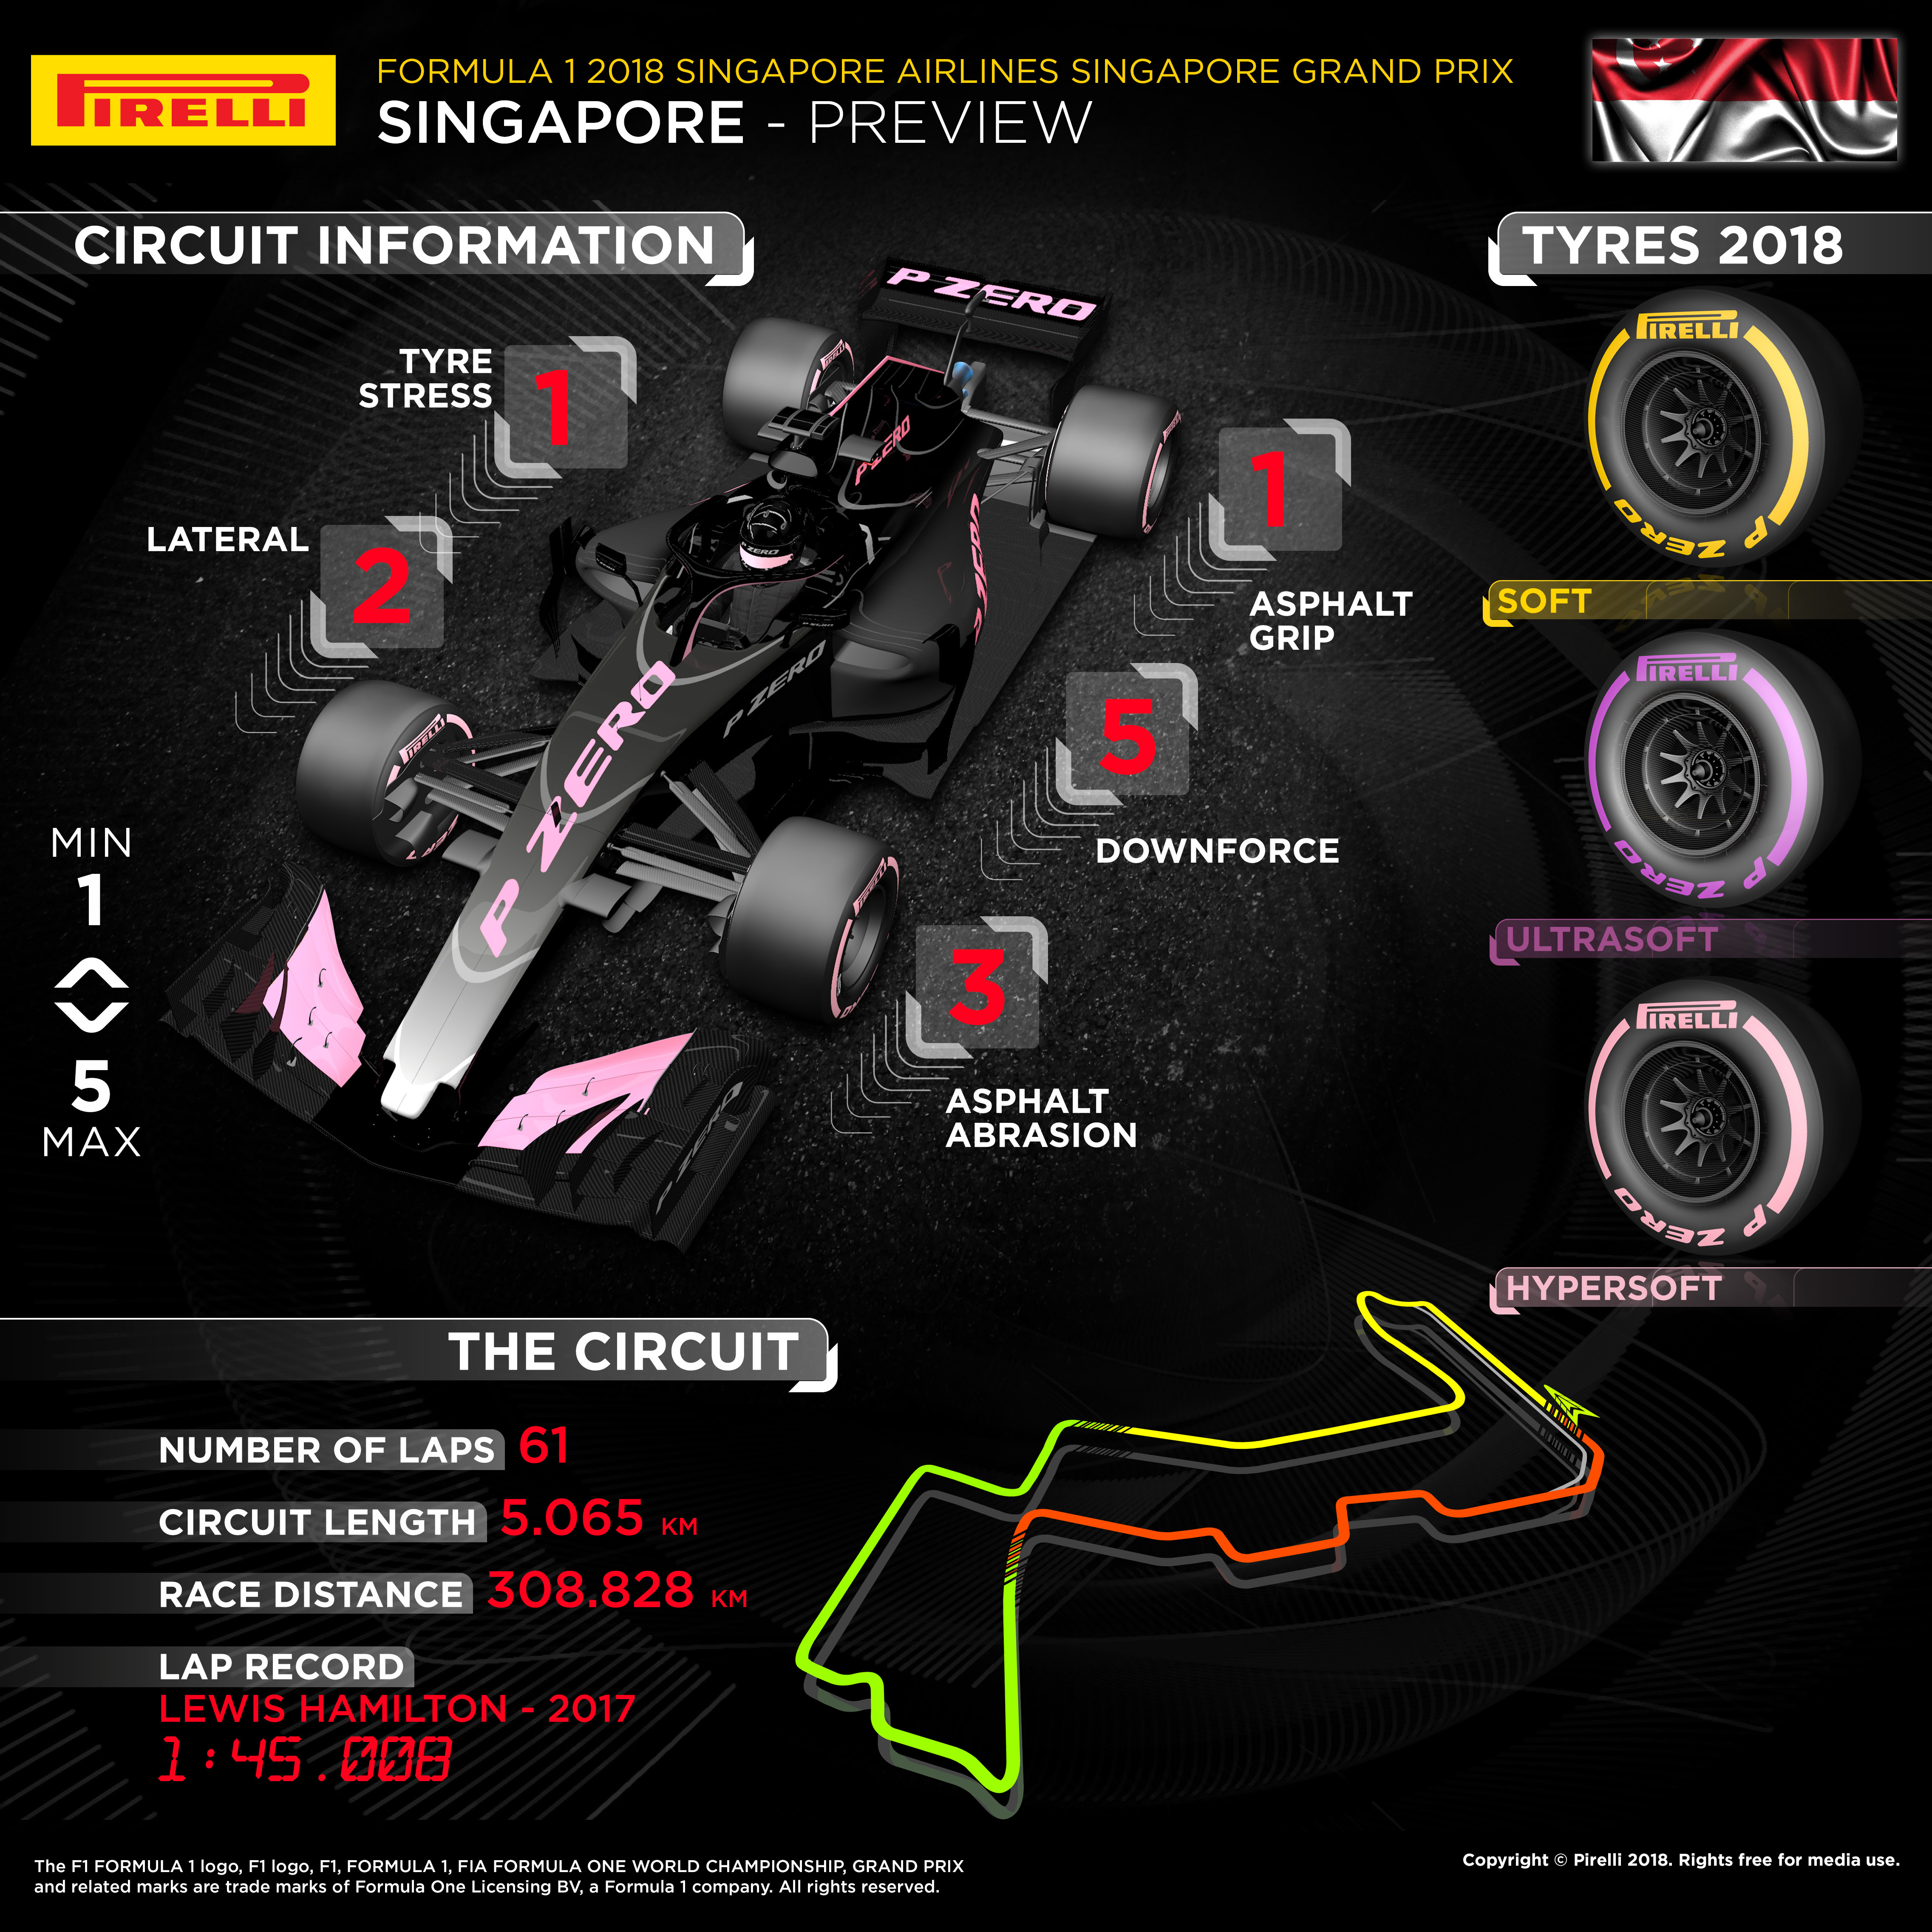 كل ما تحتاج معرفته عن جائزة سنغافورة الكبرى للفورمولا 1 3